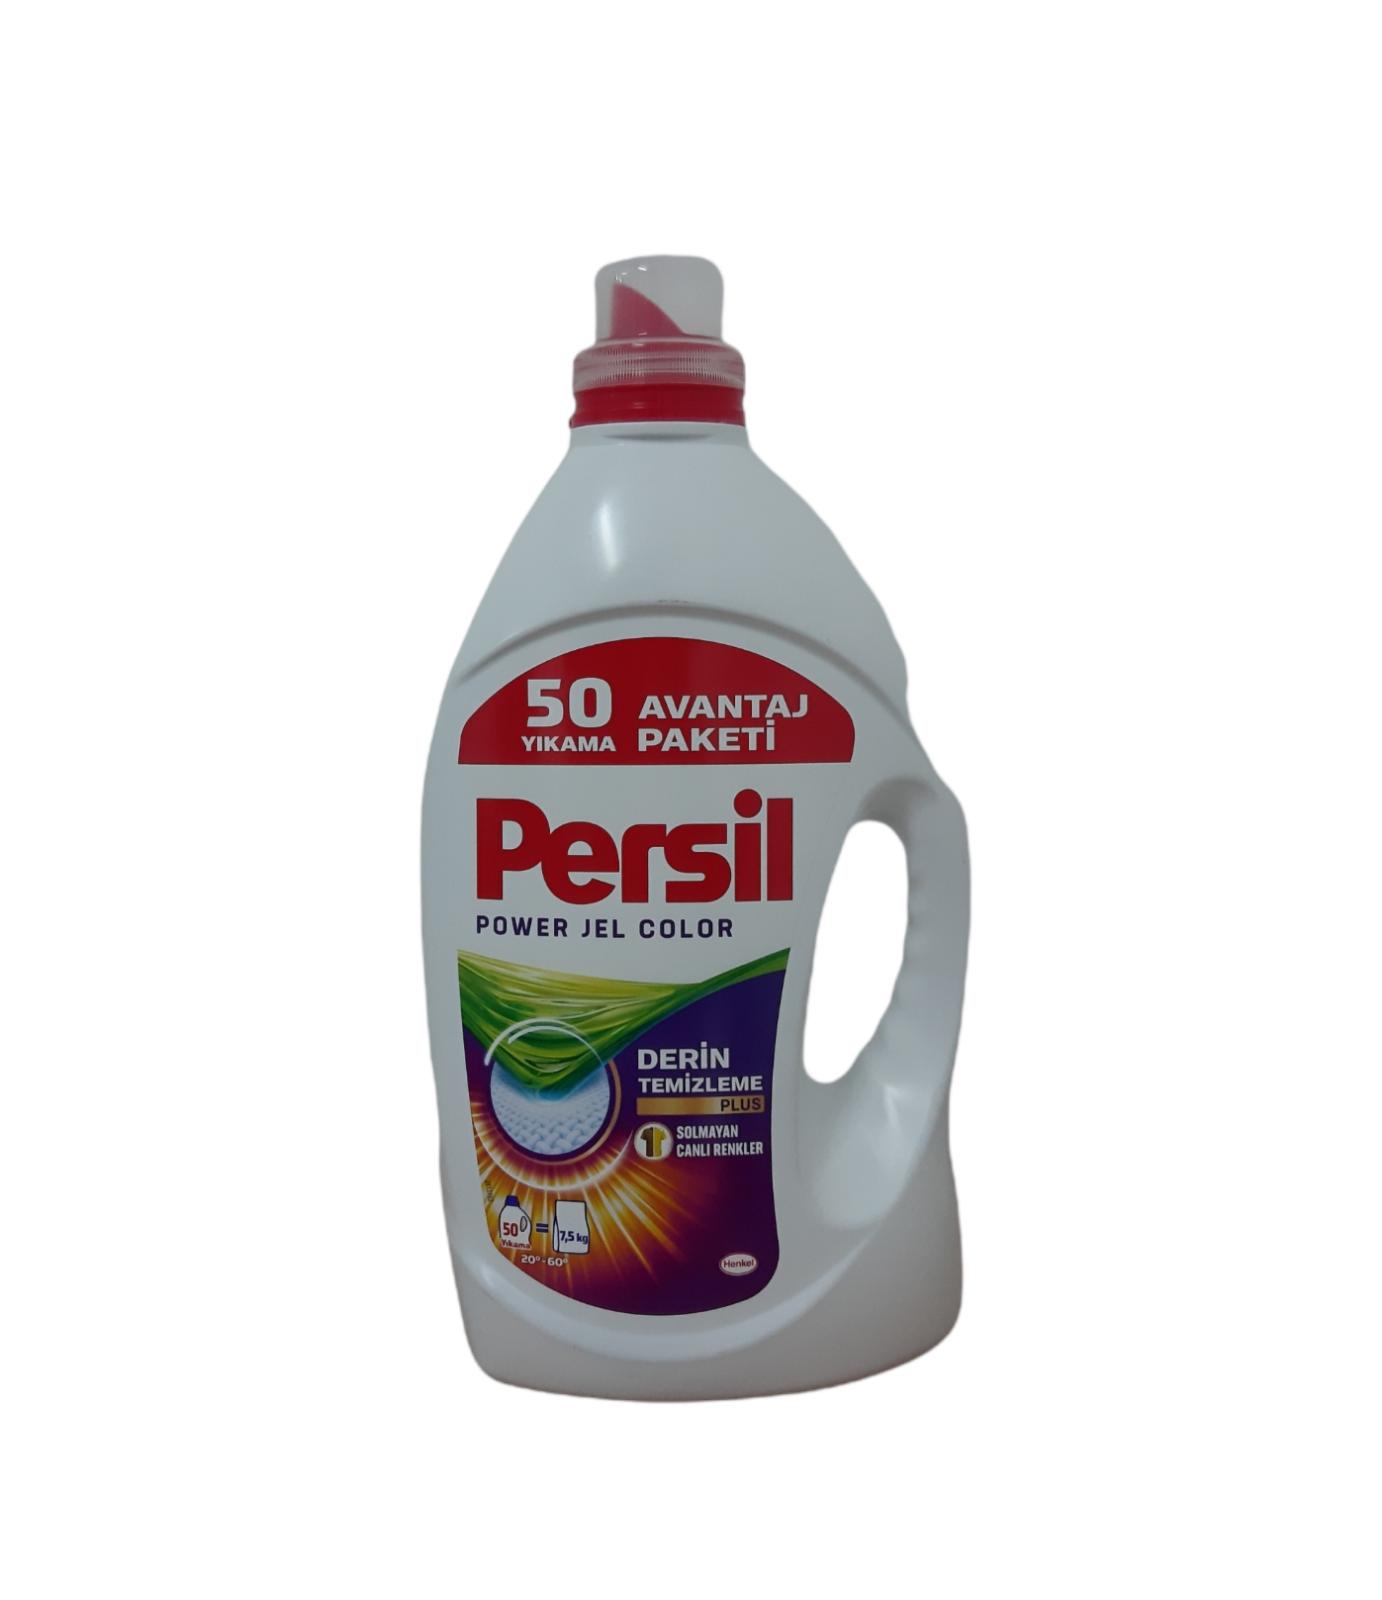 Persil 3.250 lt Power Jel Collor   Derin Temizleme Jel Çamaşır Deterjanı 50 Yıkama  Avantaj Paketi